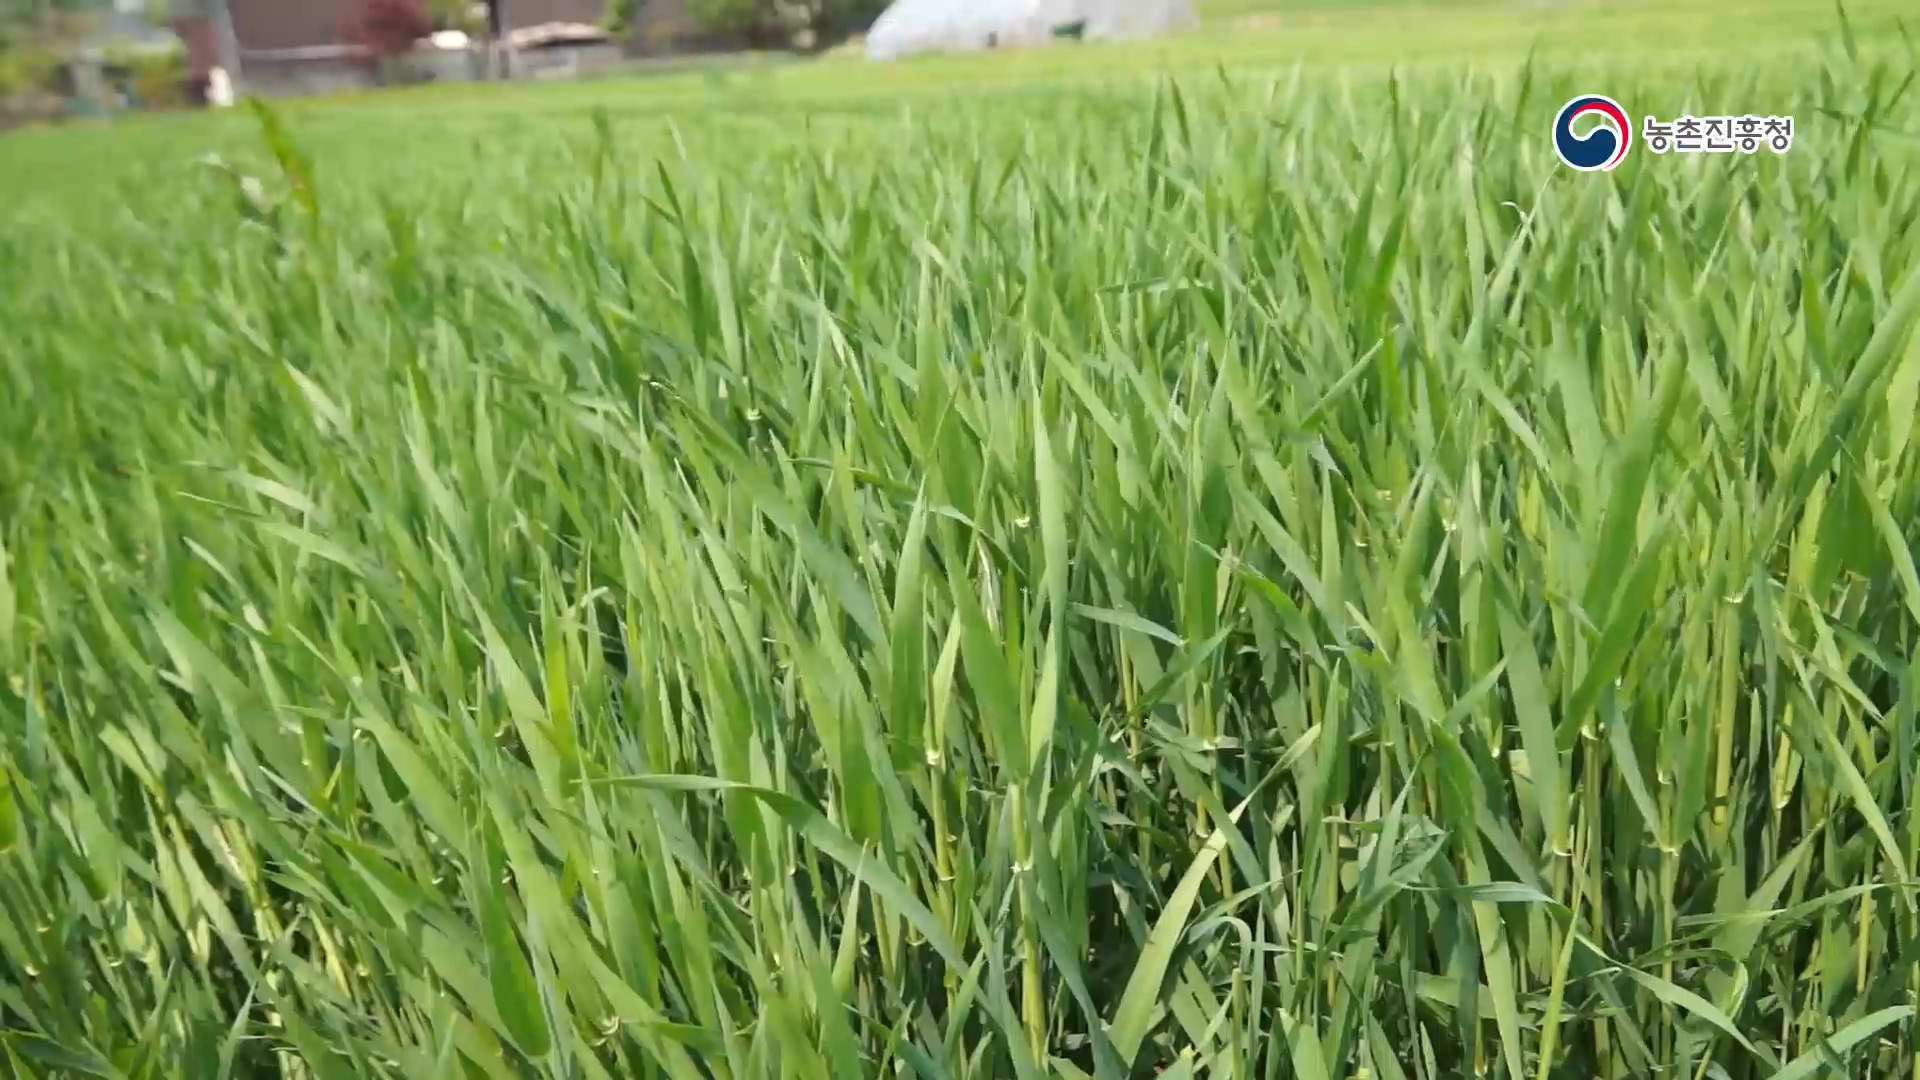 동영상 썸네일 이미지 :풀이 아닌 약초! 새싹작물